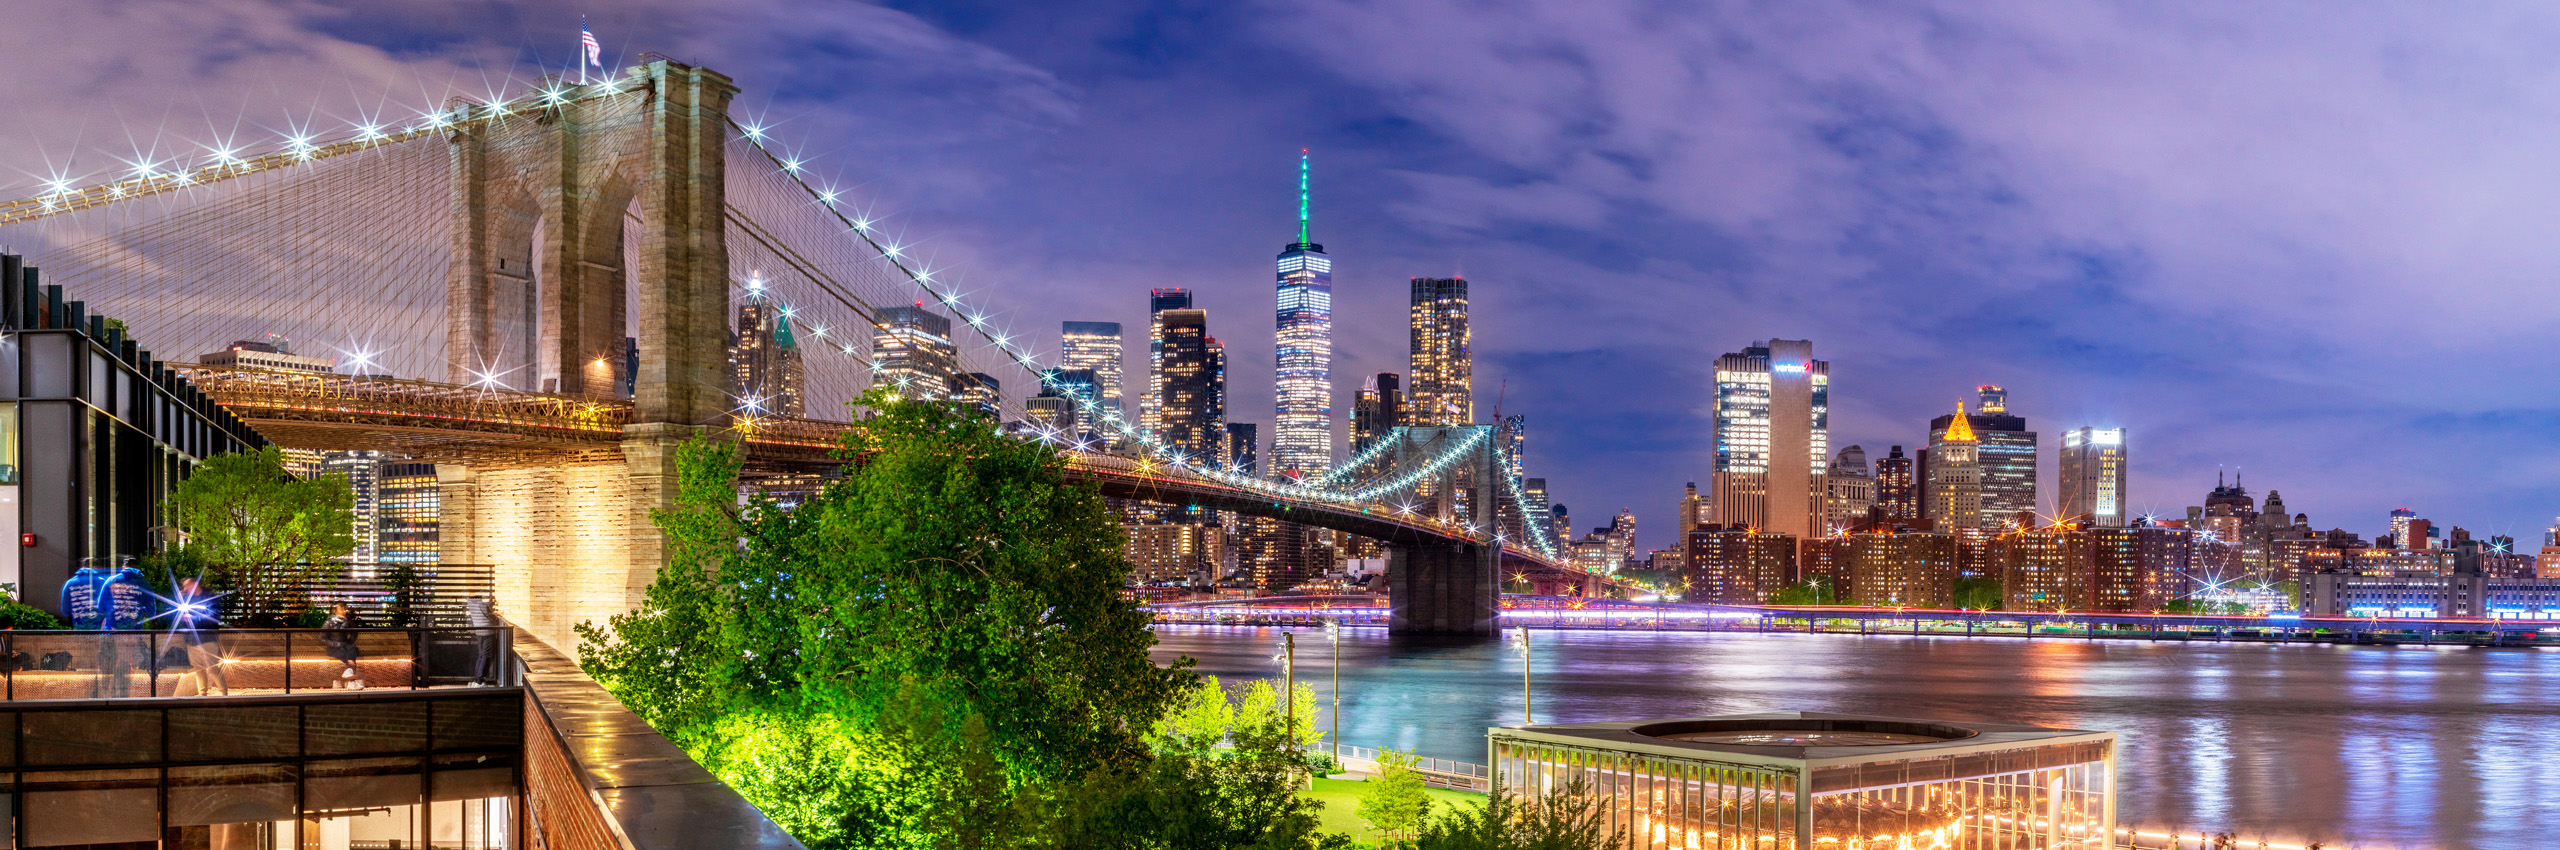 41305478 | Vereinigte Staaten/New York City, Brooklyn, Brooklyn Bridge | © Susanne Kremer/HUBER IMAGES